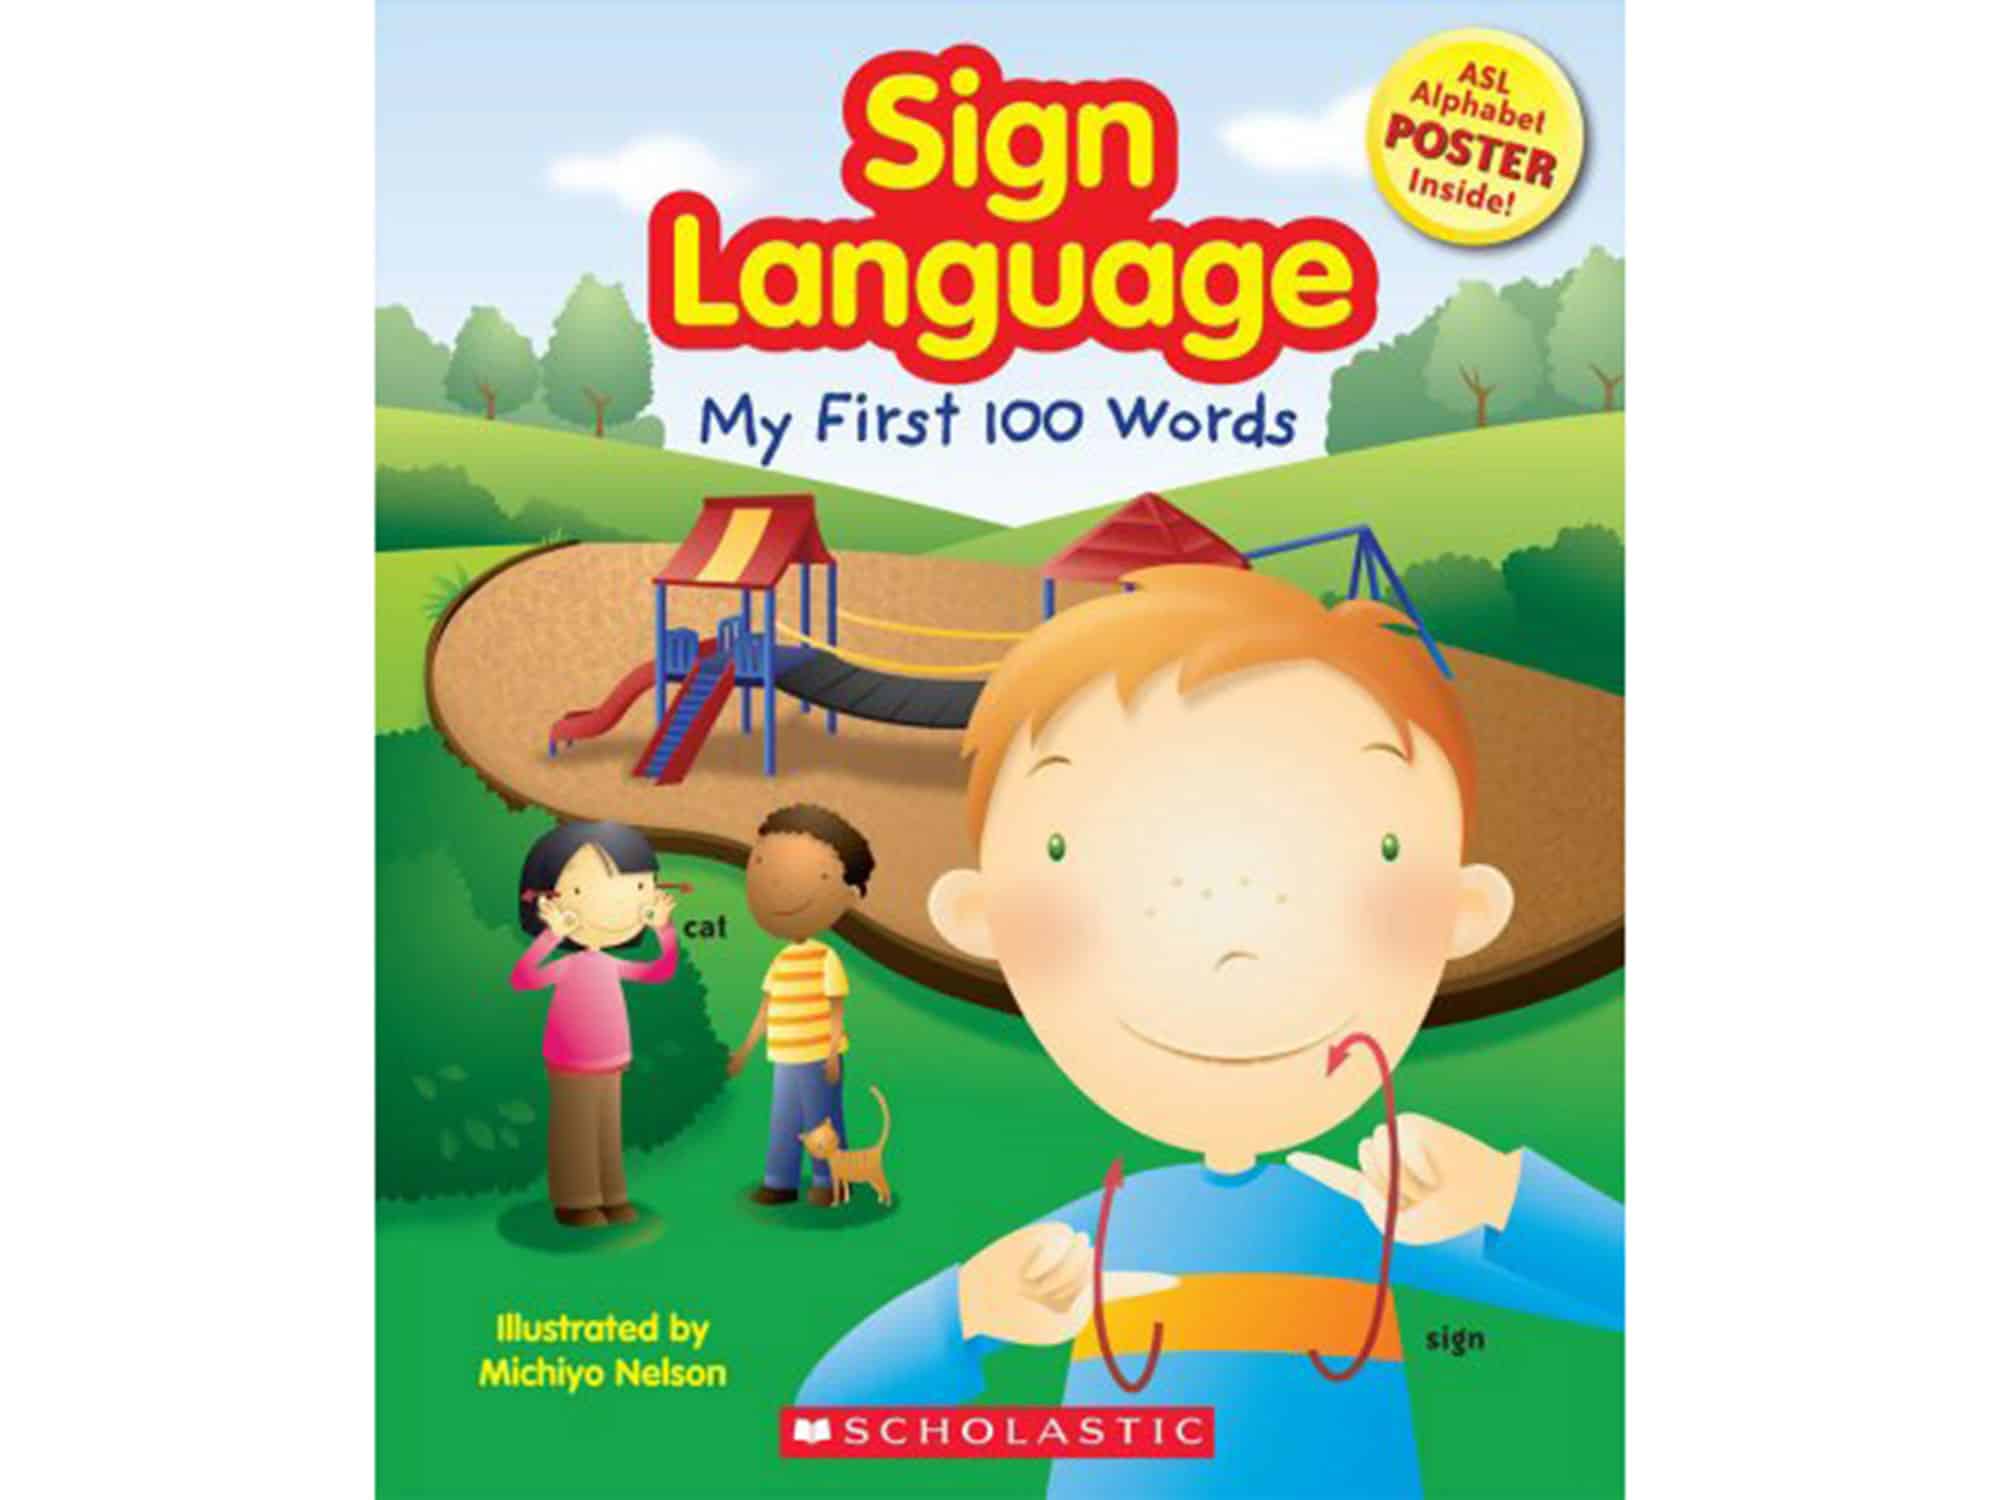 Sign language game